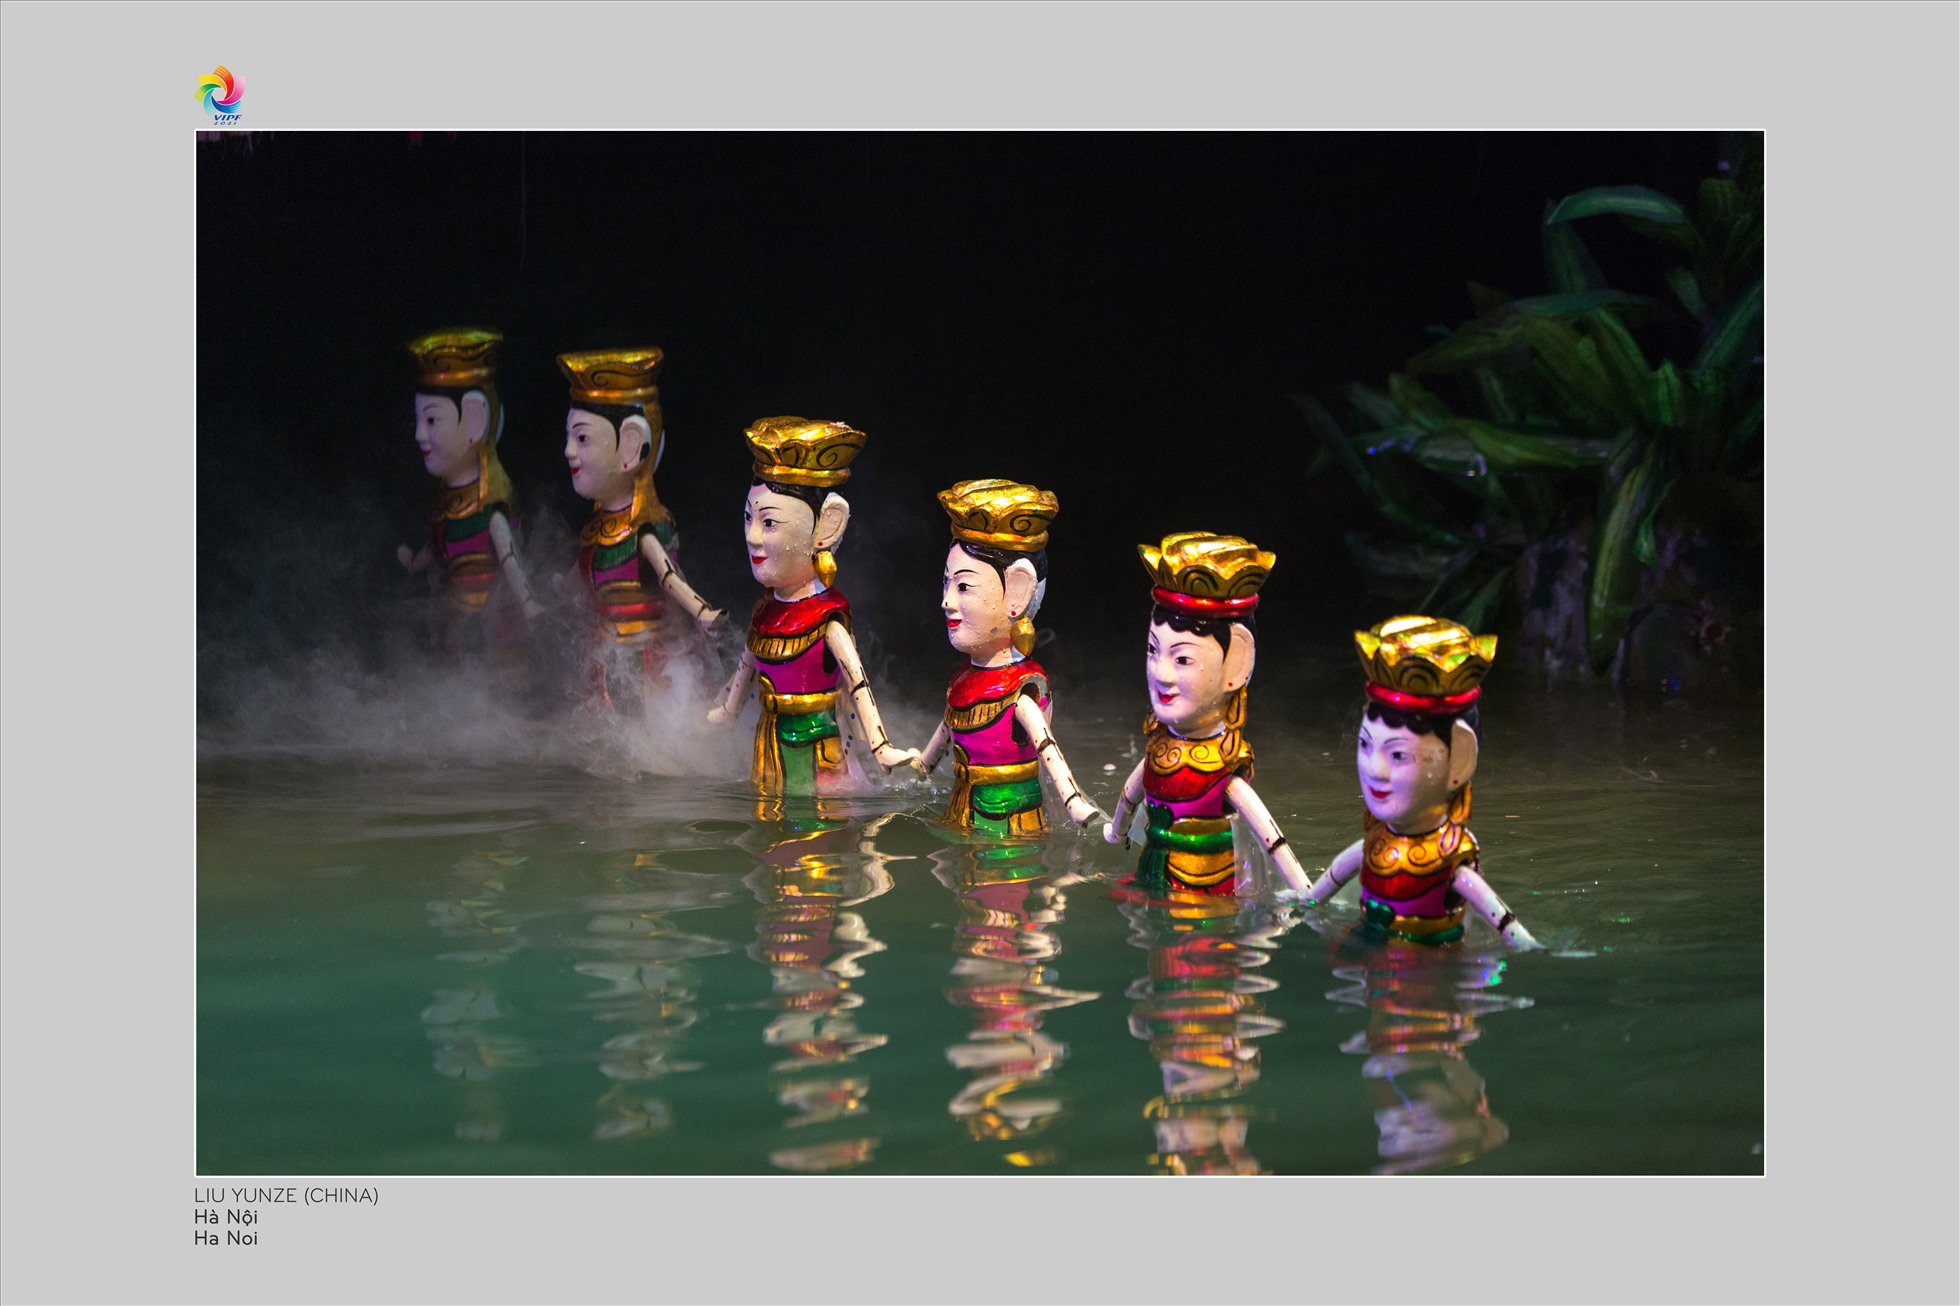 Múa rối nước, Hà Nội. Ảnh: Liu Yunze (Trung Quốc)